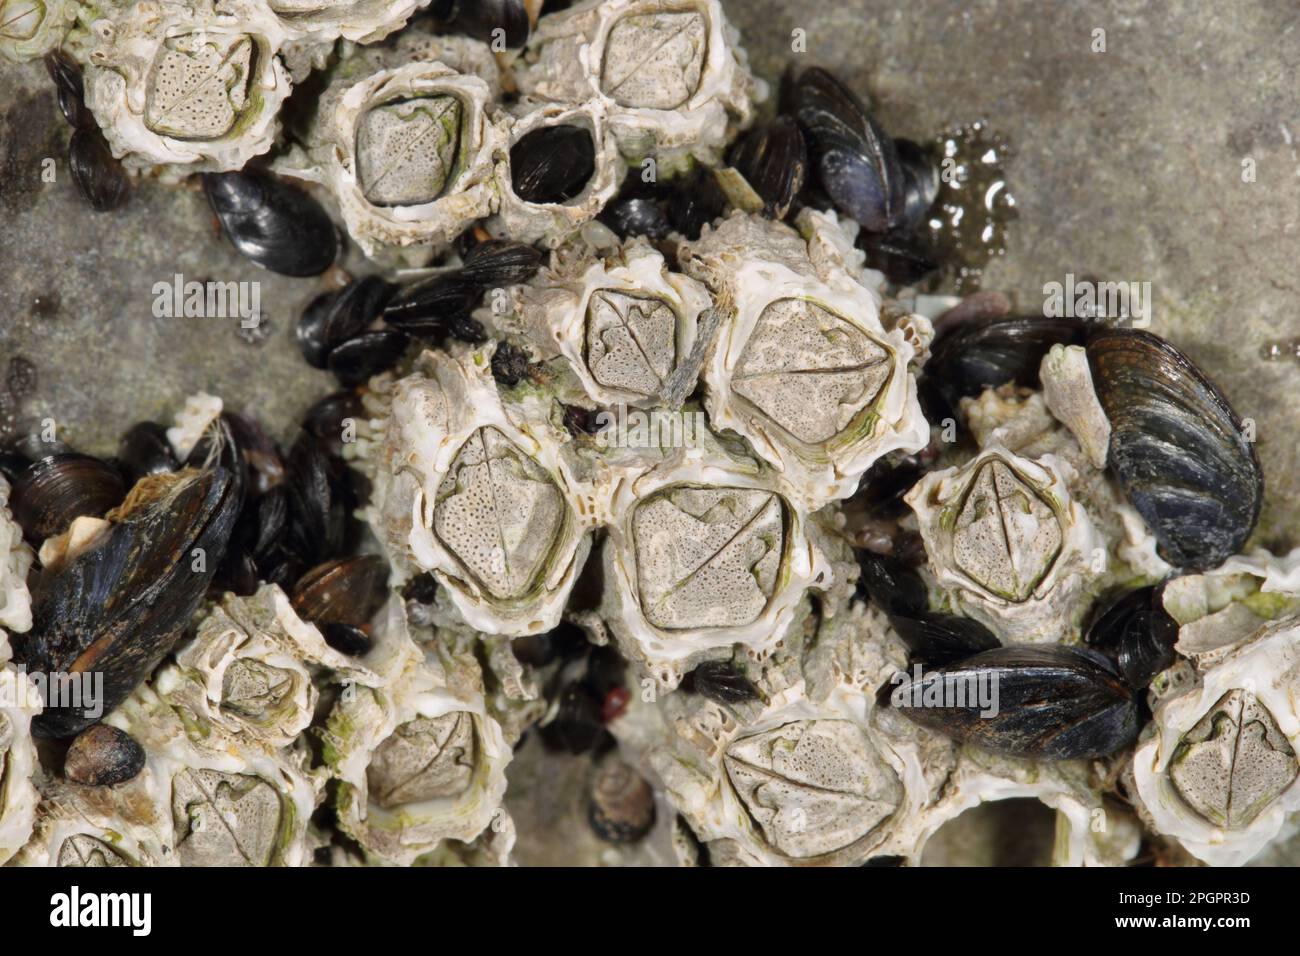 Barnacle d'corne adulte (Semibalanus balanoides), sur la côte rocheuse exposée, péninsule de Gower, West Glamourgan, pays de Galles du Sud, Royaume-Uni Banque D'Images